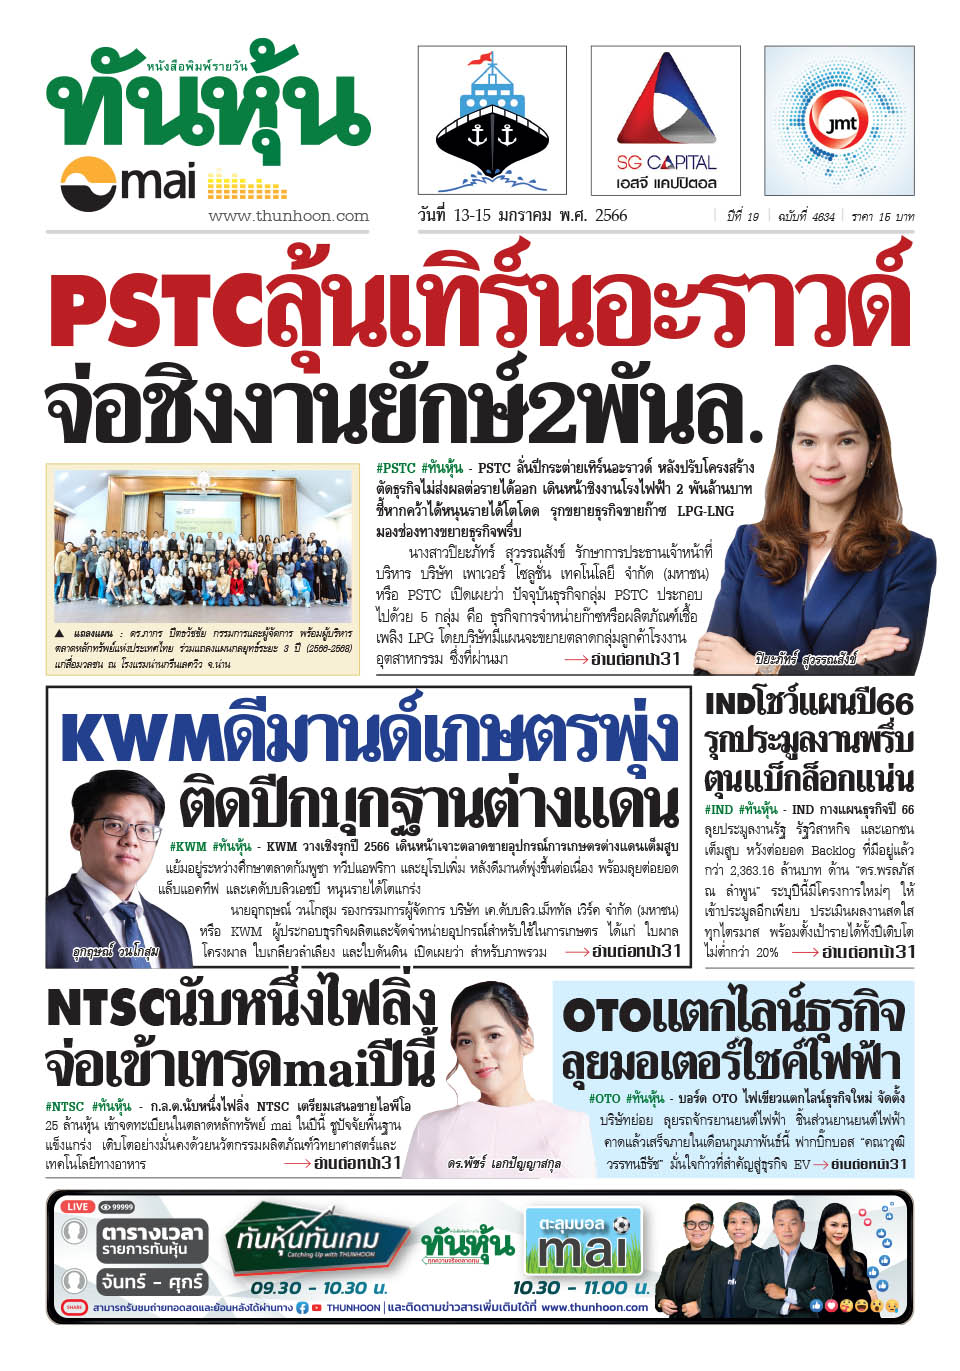 หนังสือพิมพ์ ทันหุ้น ข่าว Mai ฉบับวันที่ 13-15 มกราคม พ.ศ. 2566 - Thunhoon